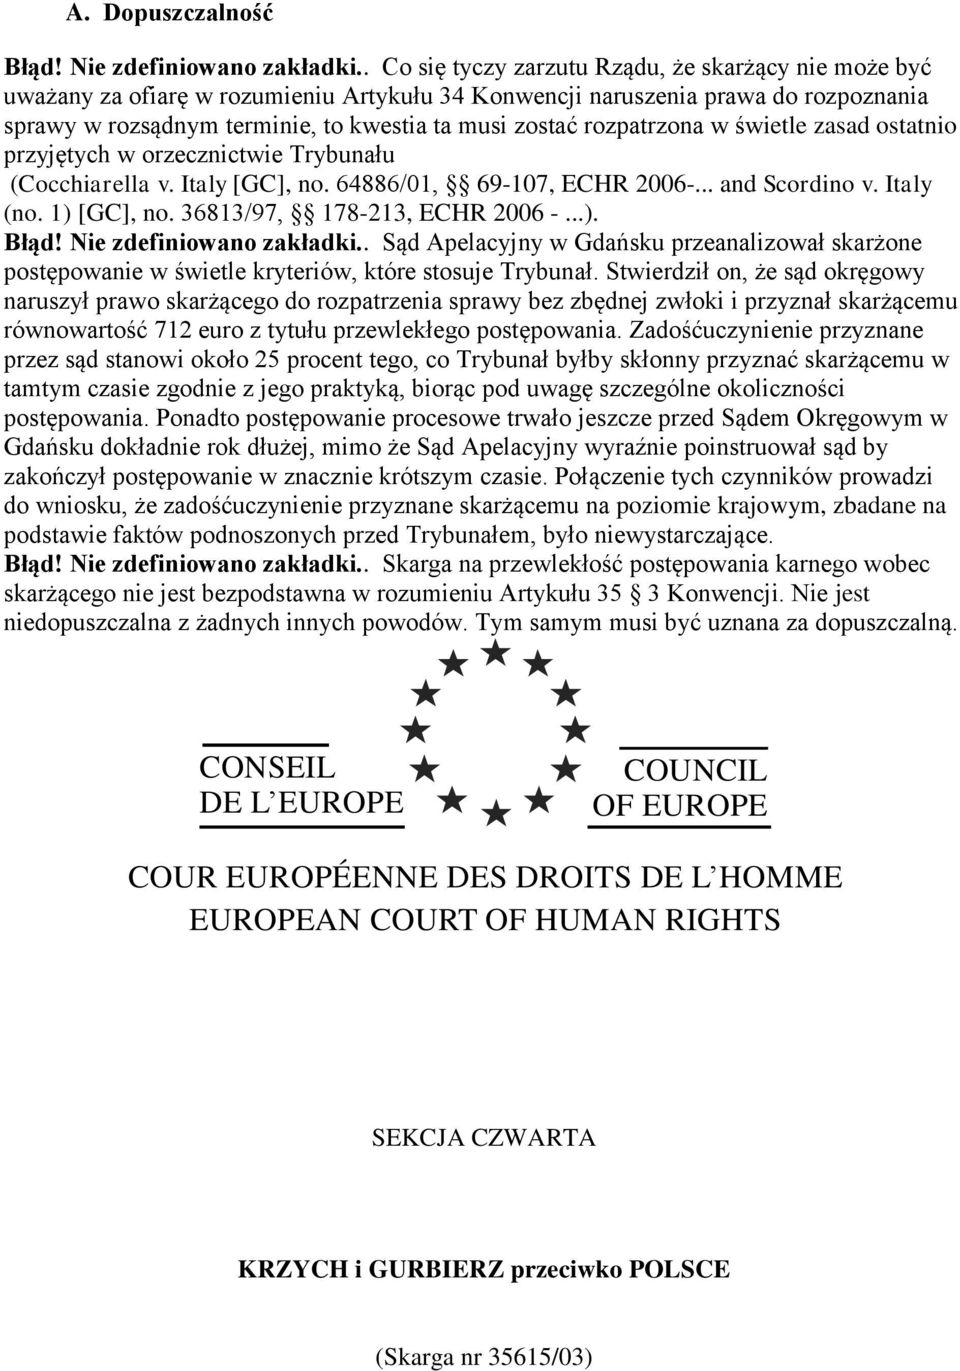 rozpatrzona w świetle zasad ostatnio przyjętych w orzecznictwie Trybunału (Cocchiarella v. Italy [GC], no. 64886/01, 69-107, ECHR 2006-... and Scordino v. Italy (no. 1) [GC], no.